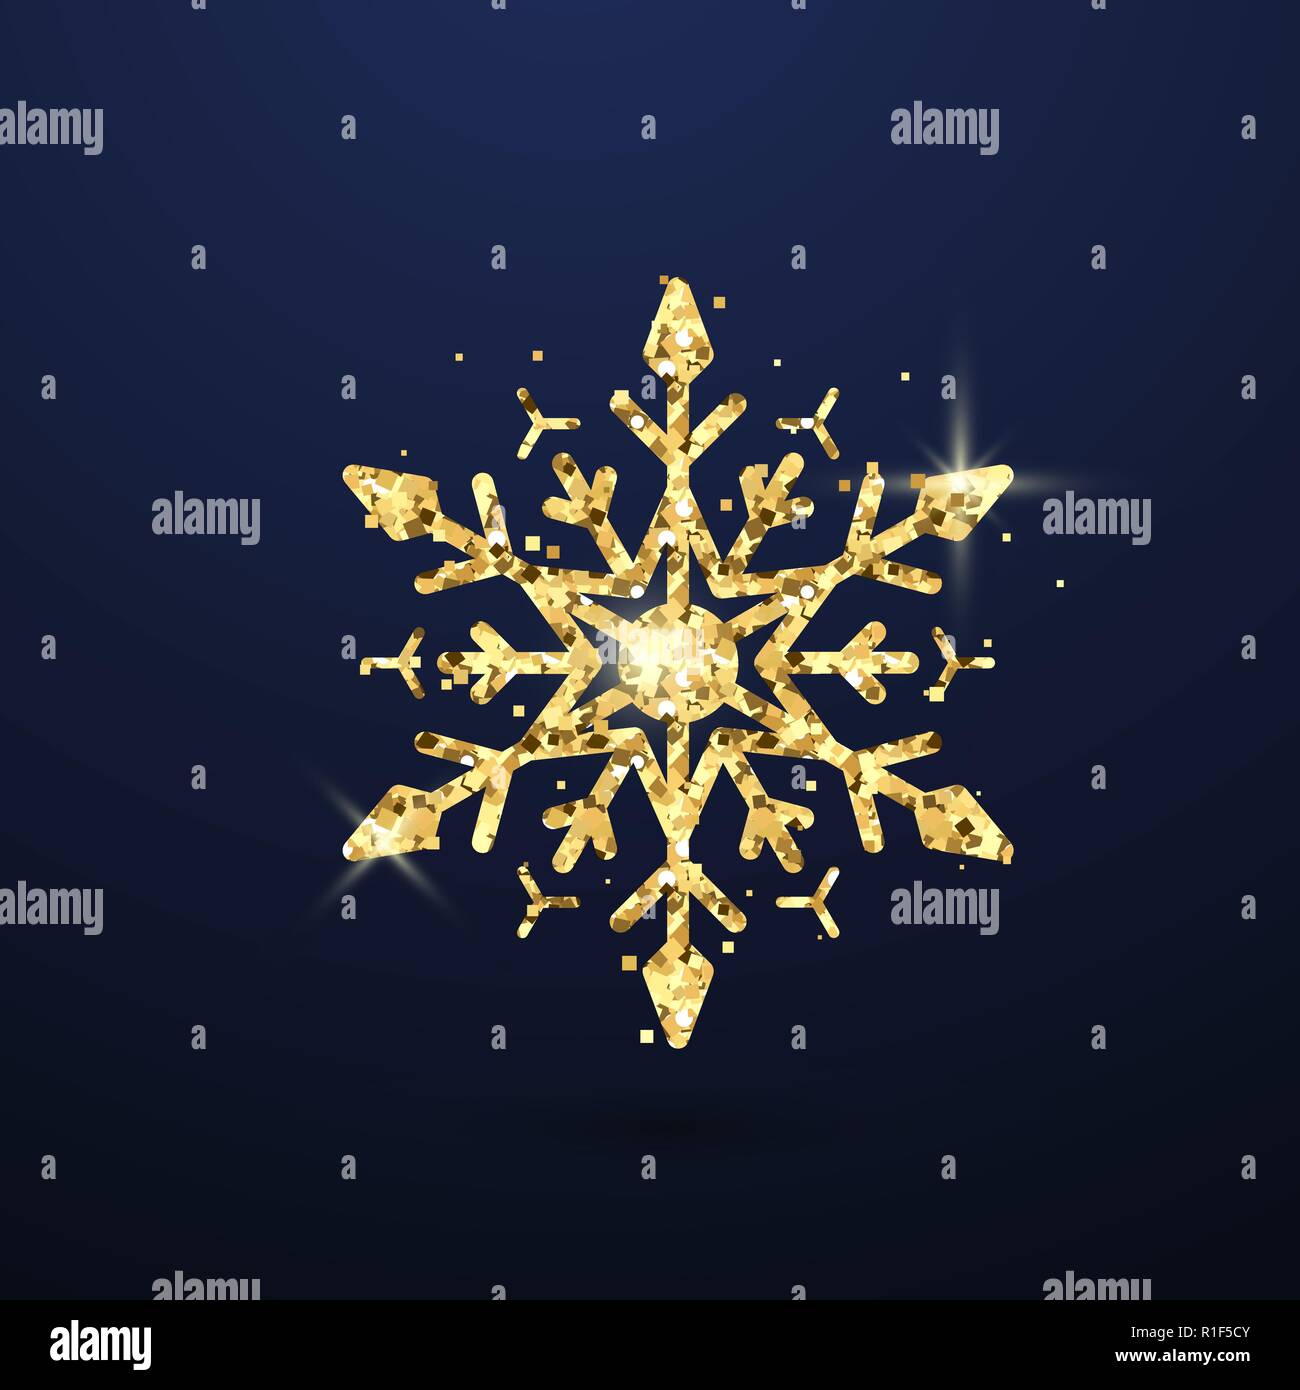 Festive golden il simbolo del fiocco di neve isolato su sfondo scuro. Capodanno e la magia del Natale decorazione simbolo. Illustrazione Vettoriale Illustrazione Vettoriale